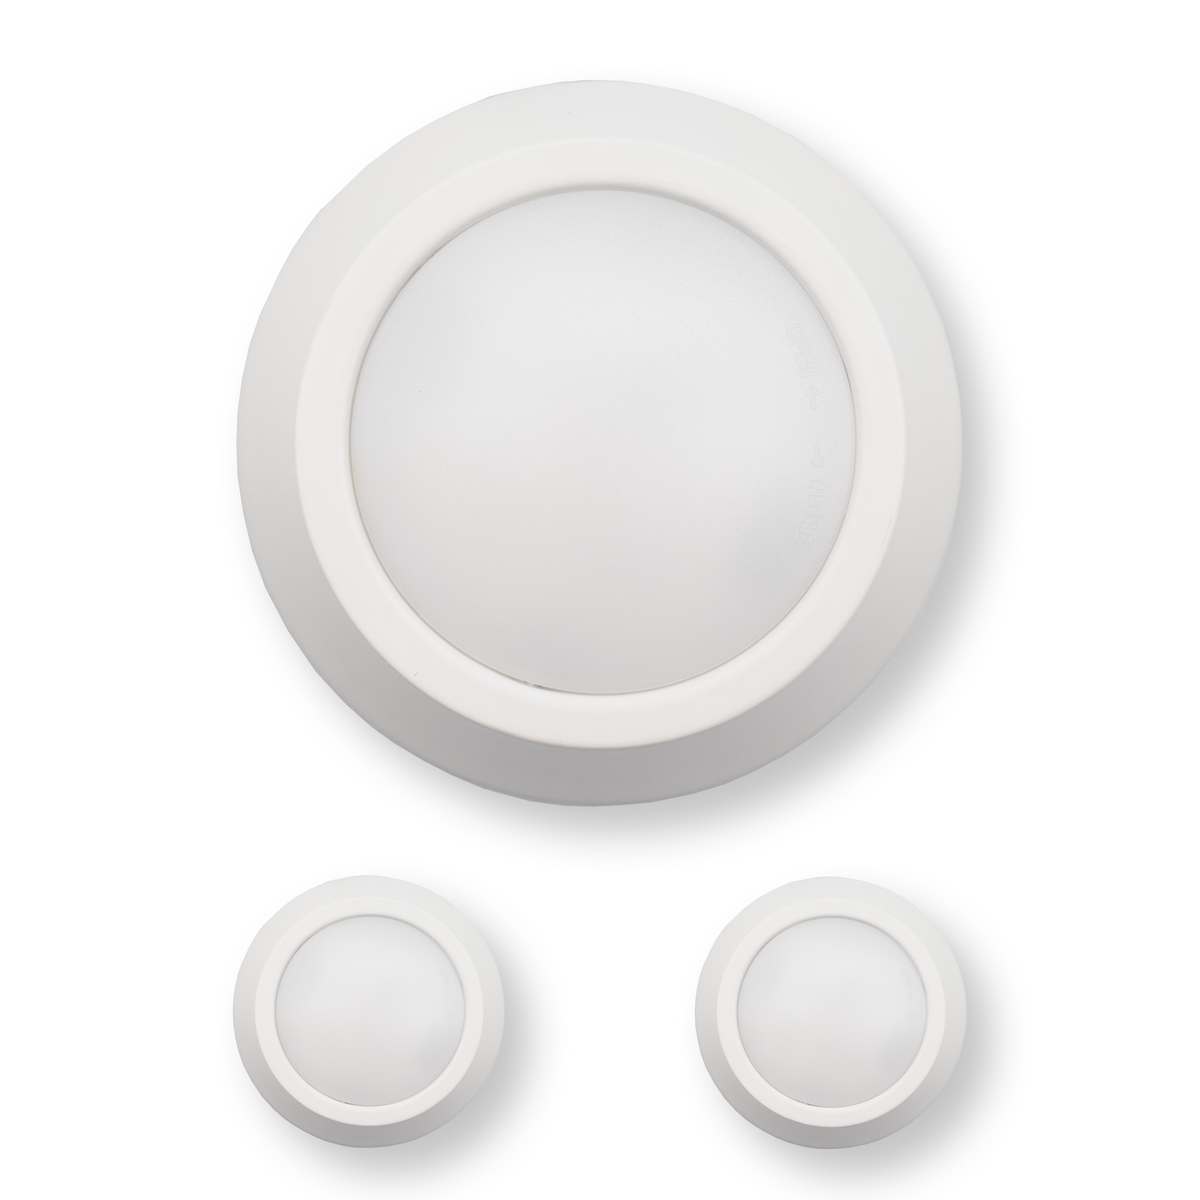 5 Inch LED Disk Light 12W - 3000K - 840Lumens - White (2 Pack, 4 Pack, 6 Pack, 8 Pack)